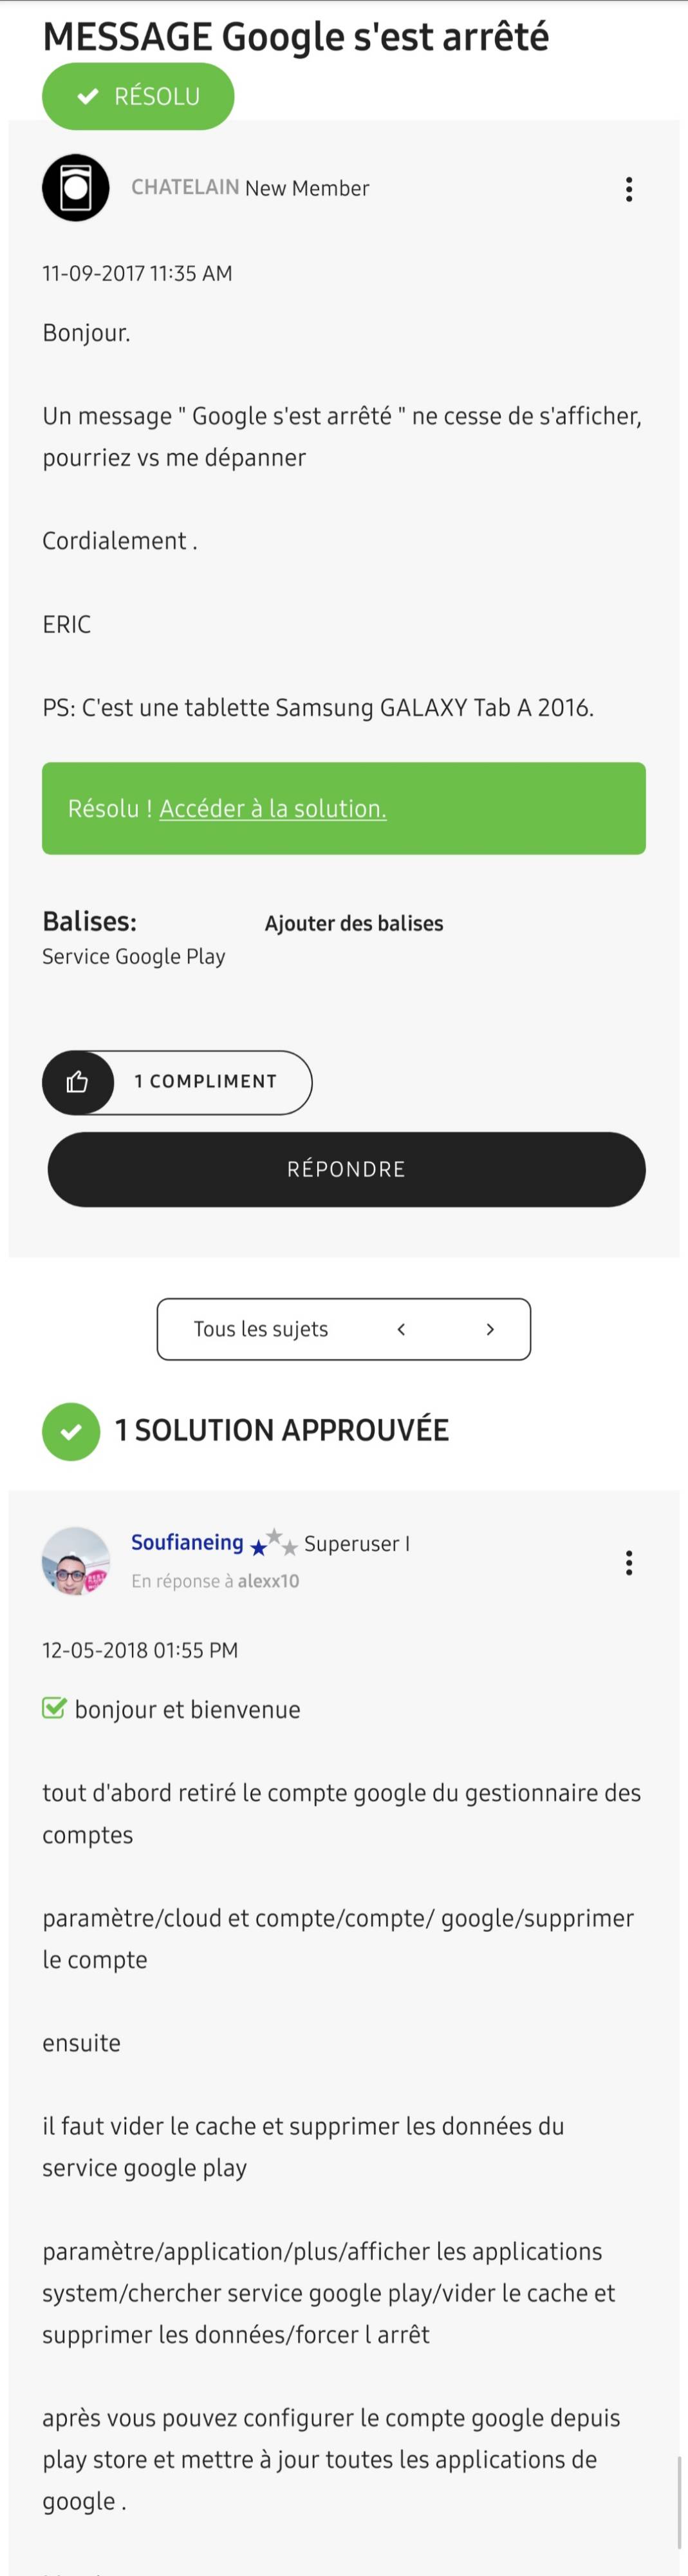 services Google play s arrête systématiquement - Samsung Community